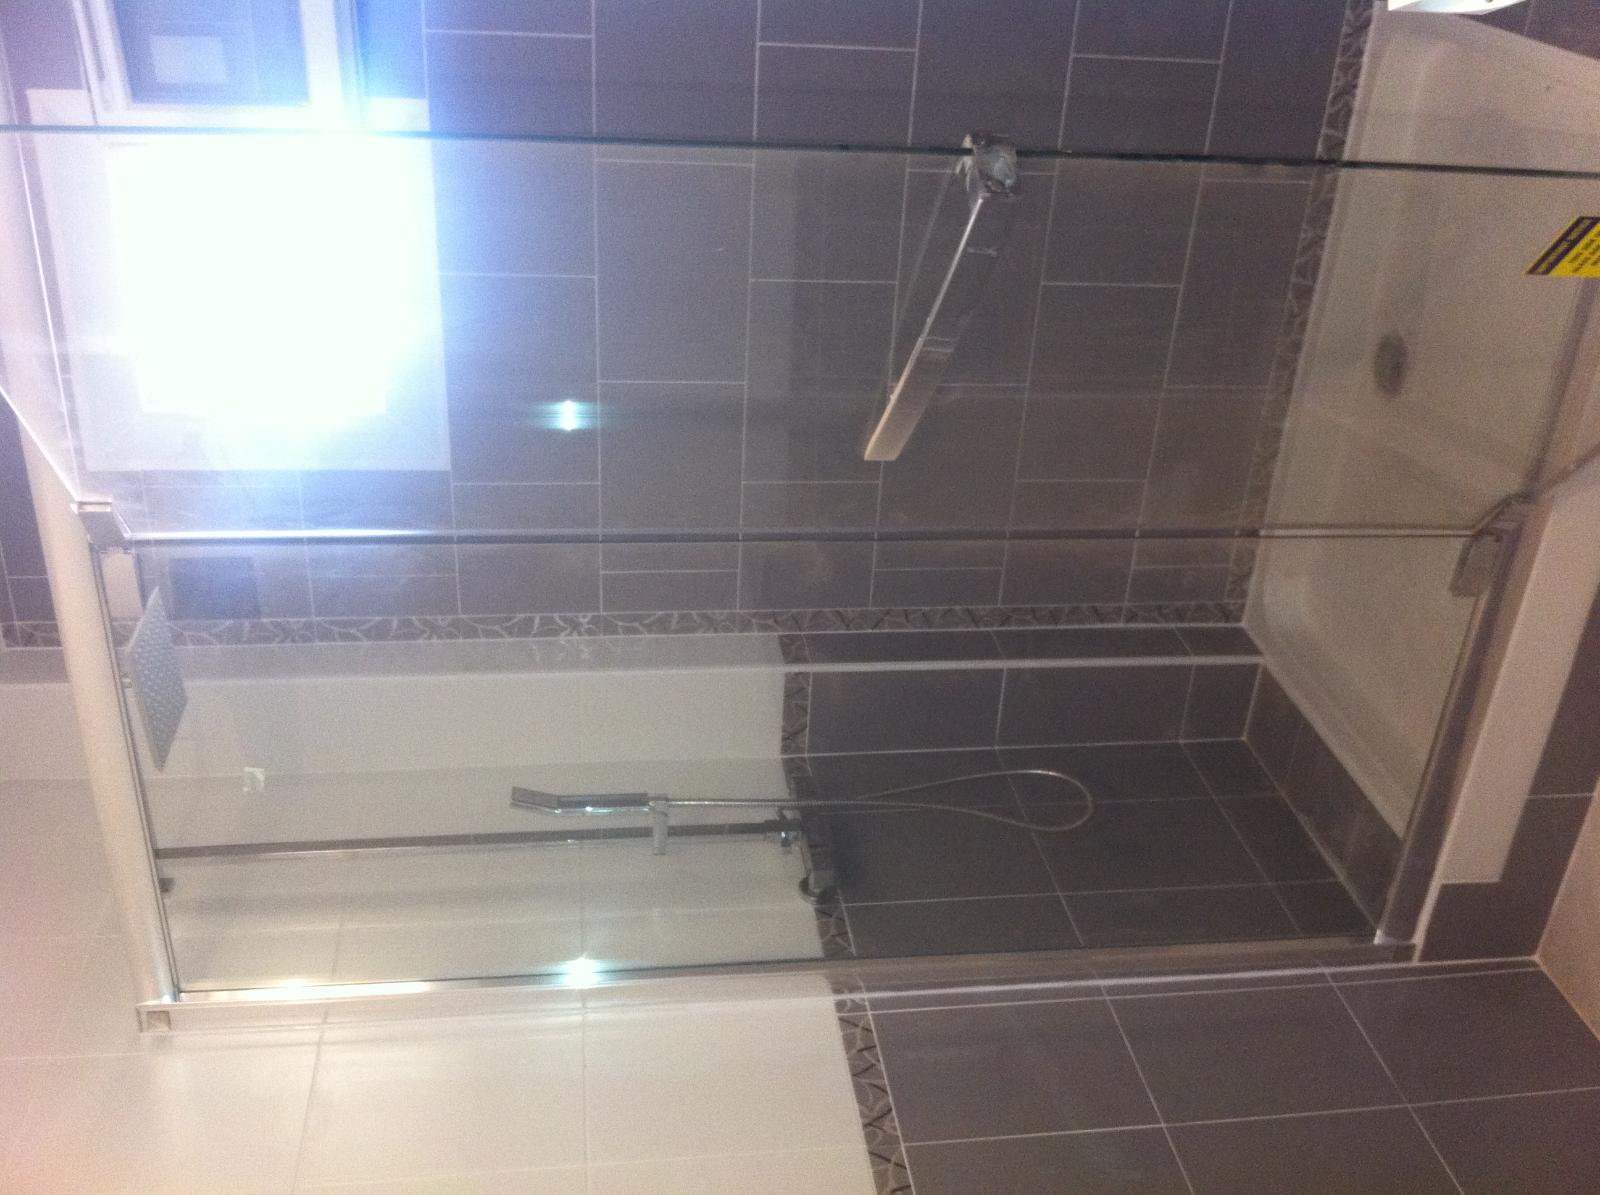 salle de bain - Ets Brignolaise de Plomberie à Brignoles dans le Var (83)